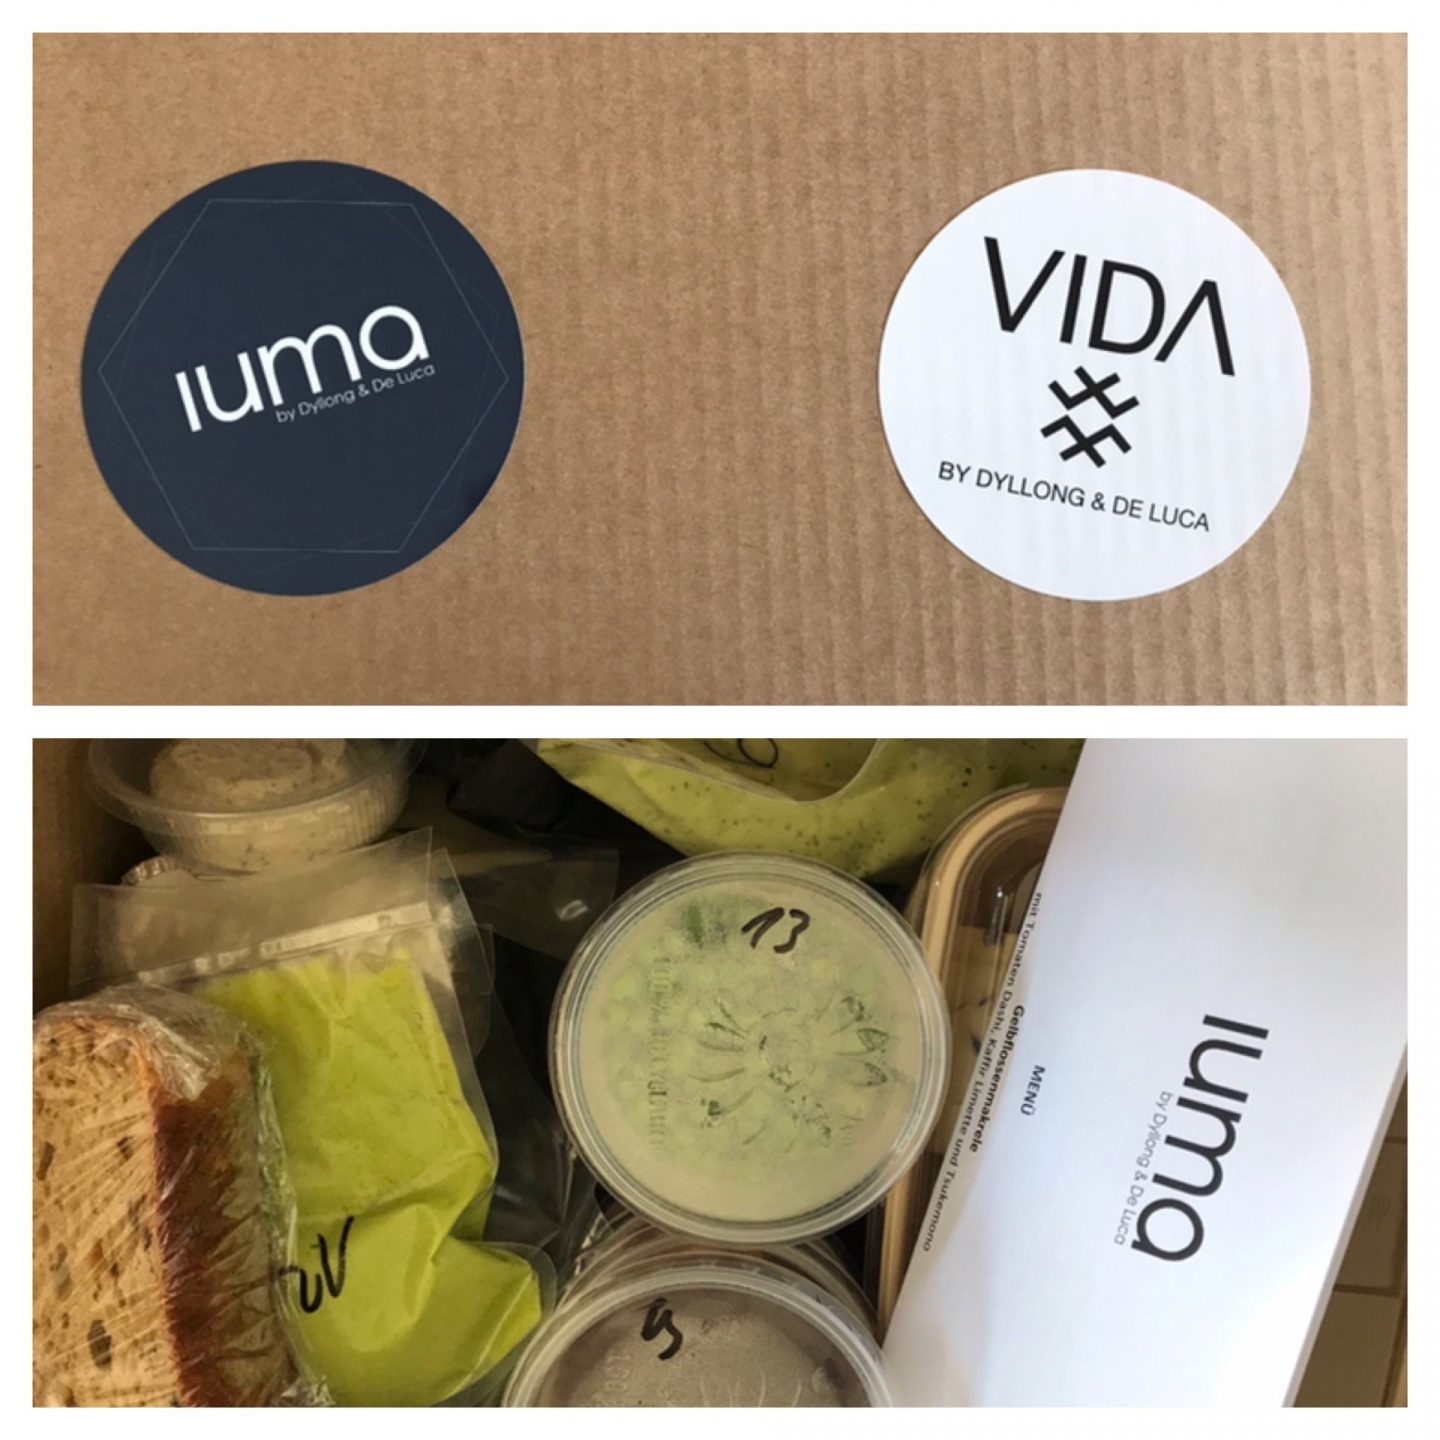 Erfahrung Bewertung Kritik Weekend Box VIDA IUMA Foodblog Sternestulle